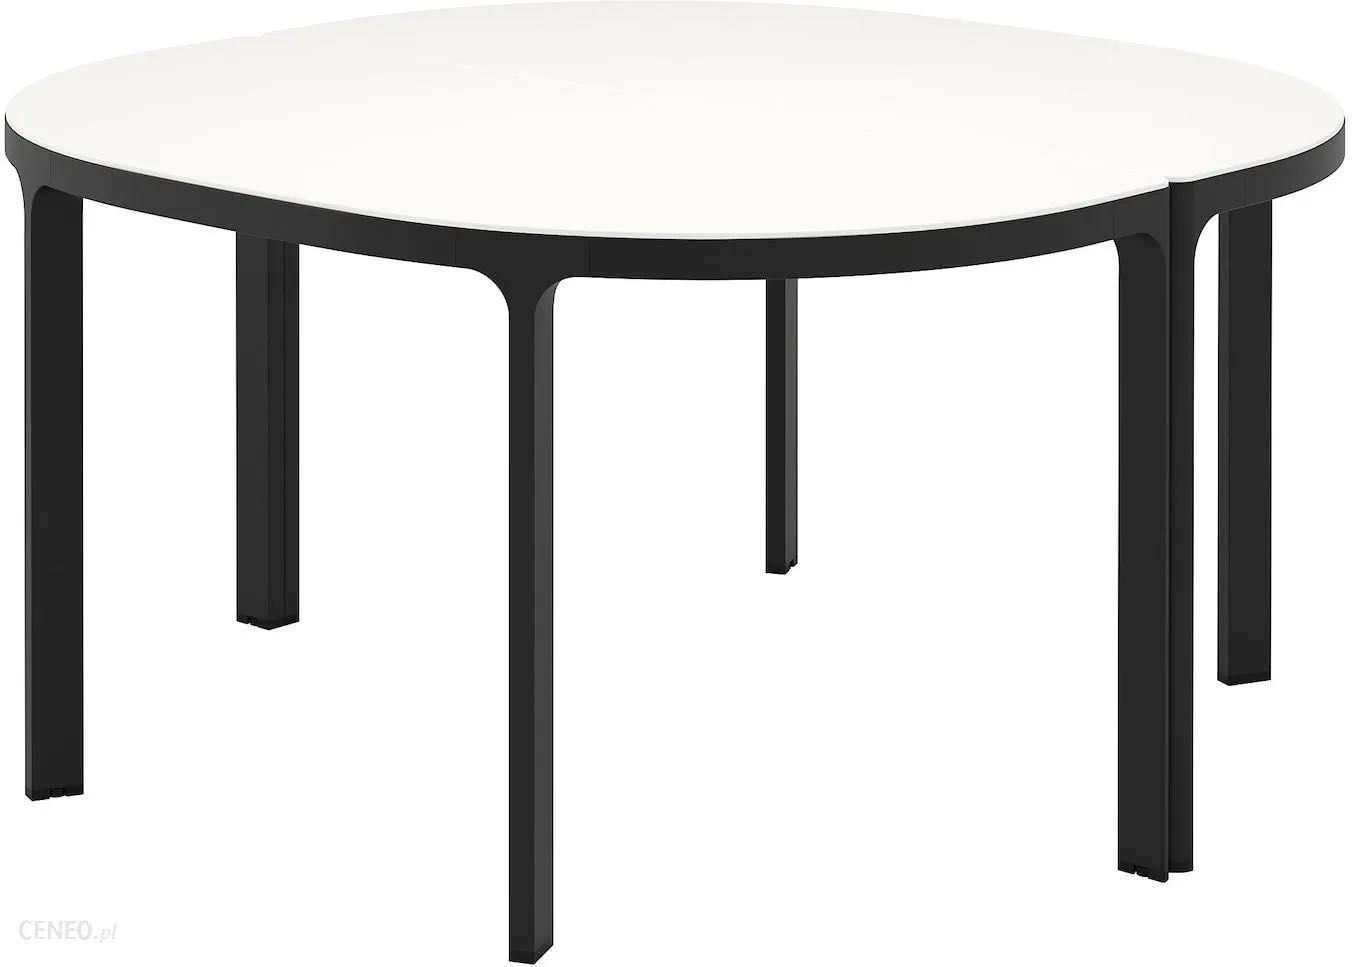 Modułowy stół Ikea Bekant czarne nogi biały blat